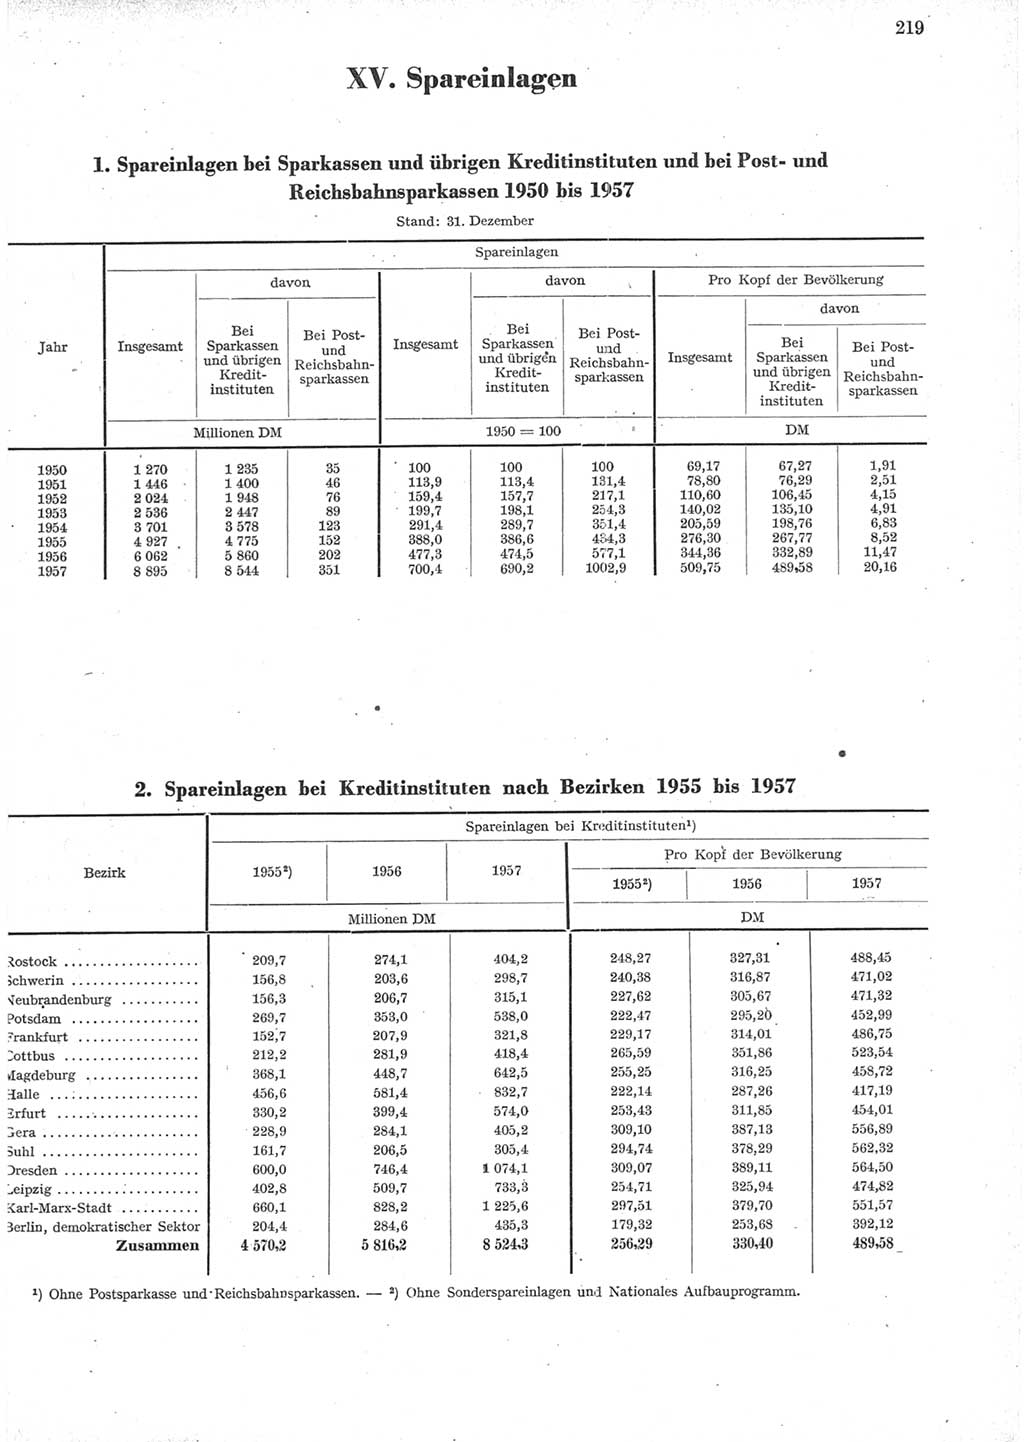 Statistisches Jahrbuch der Deutschen Demokratischen Republik (DDR) 1957, Seite 219 (Stat. Jb. DDR 1957, S. 219)